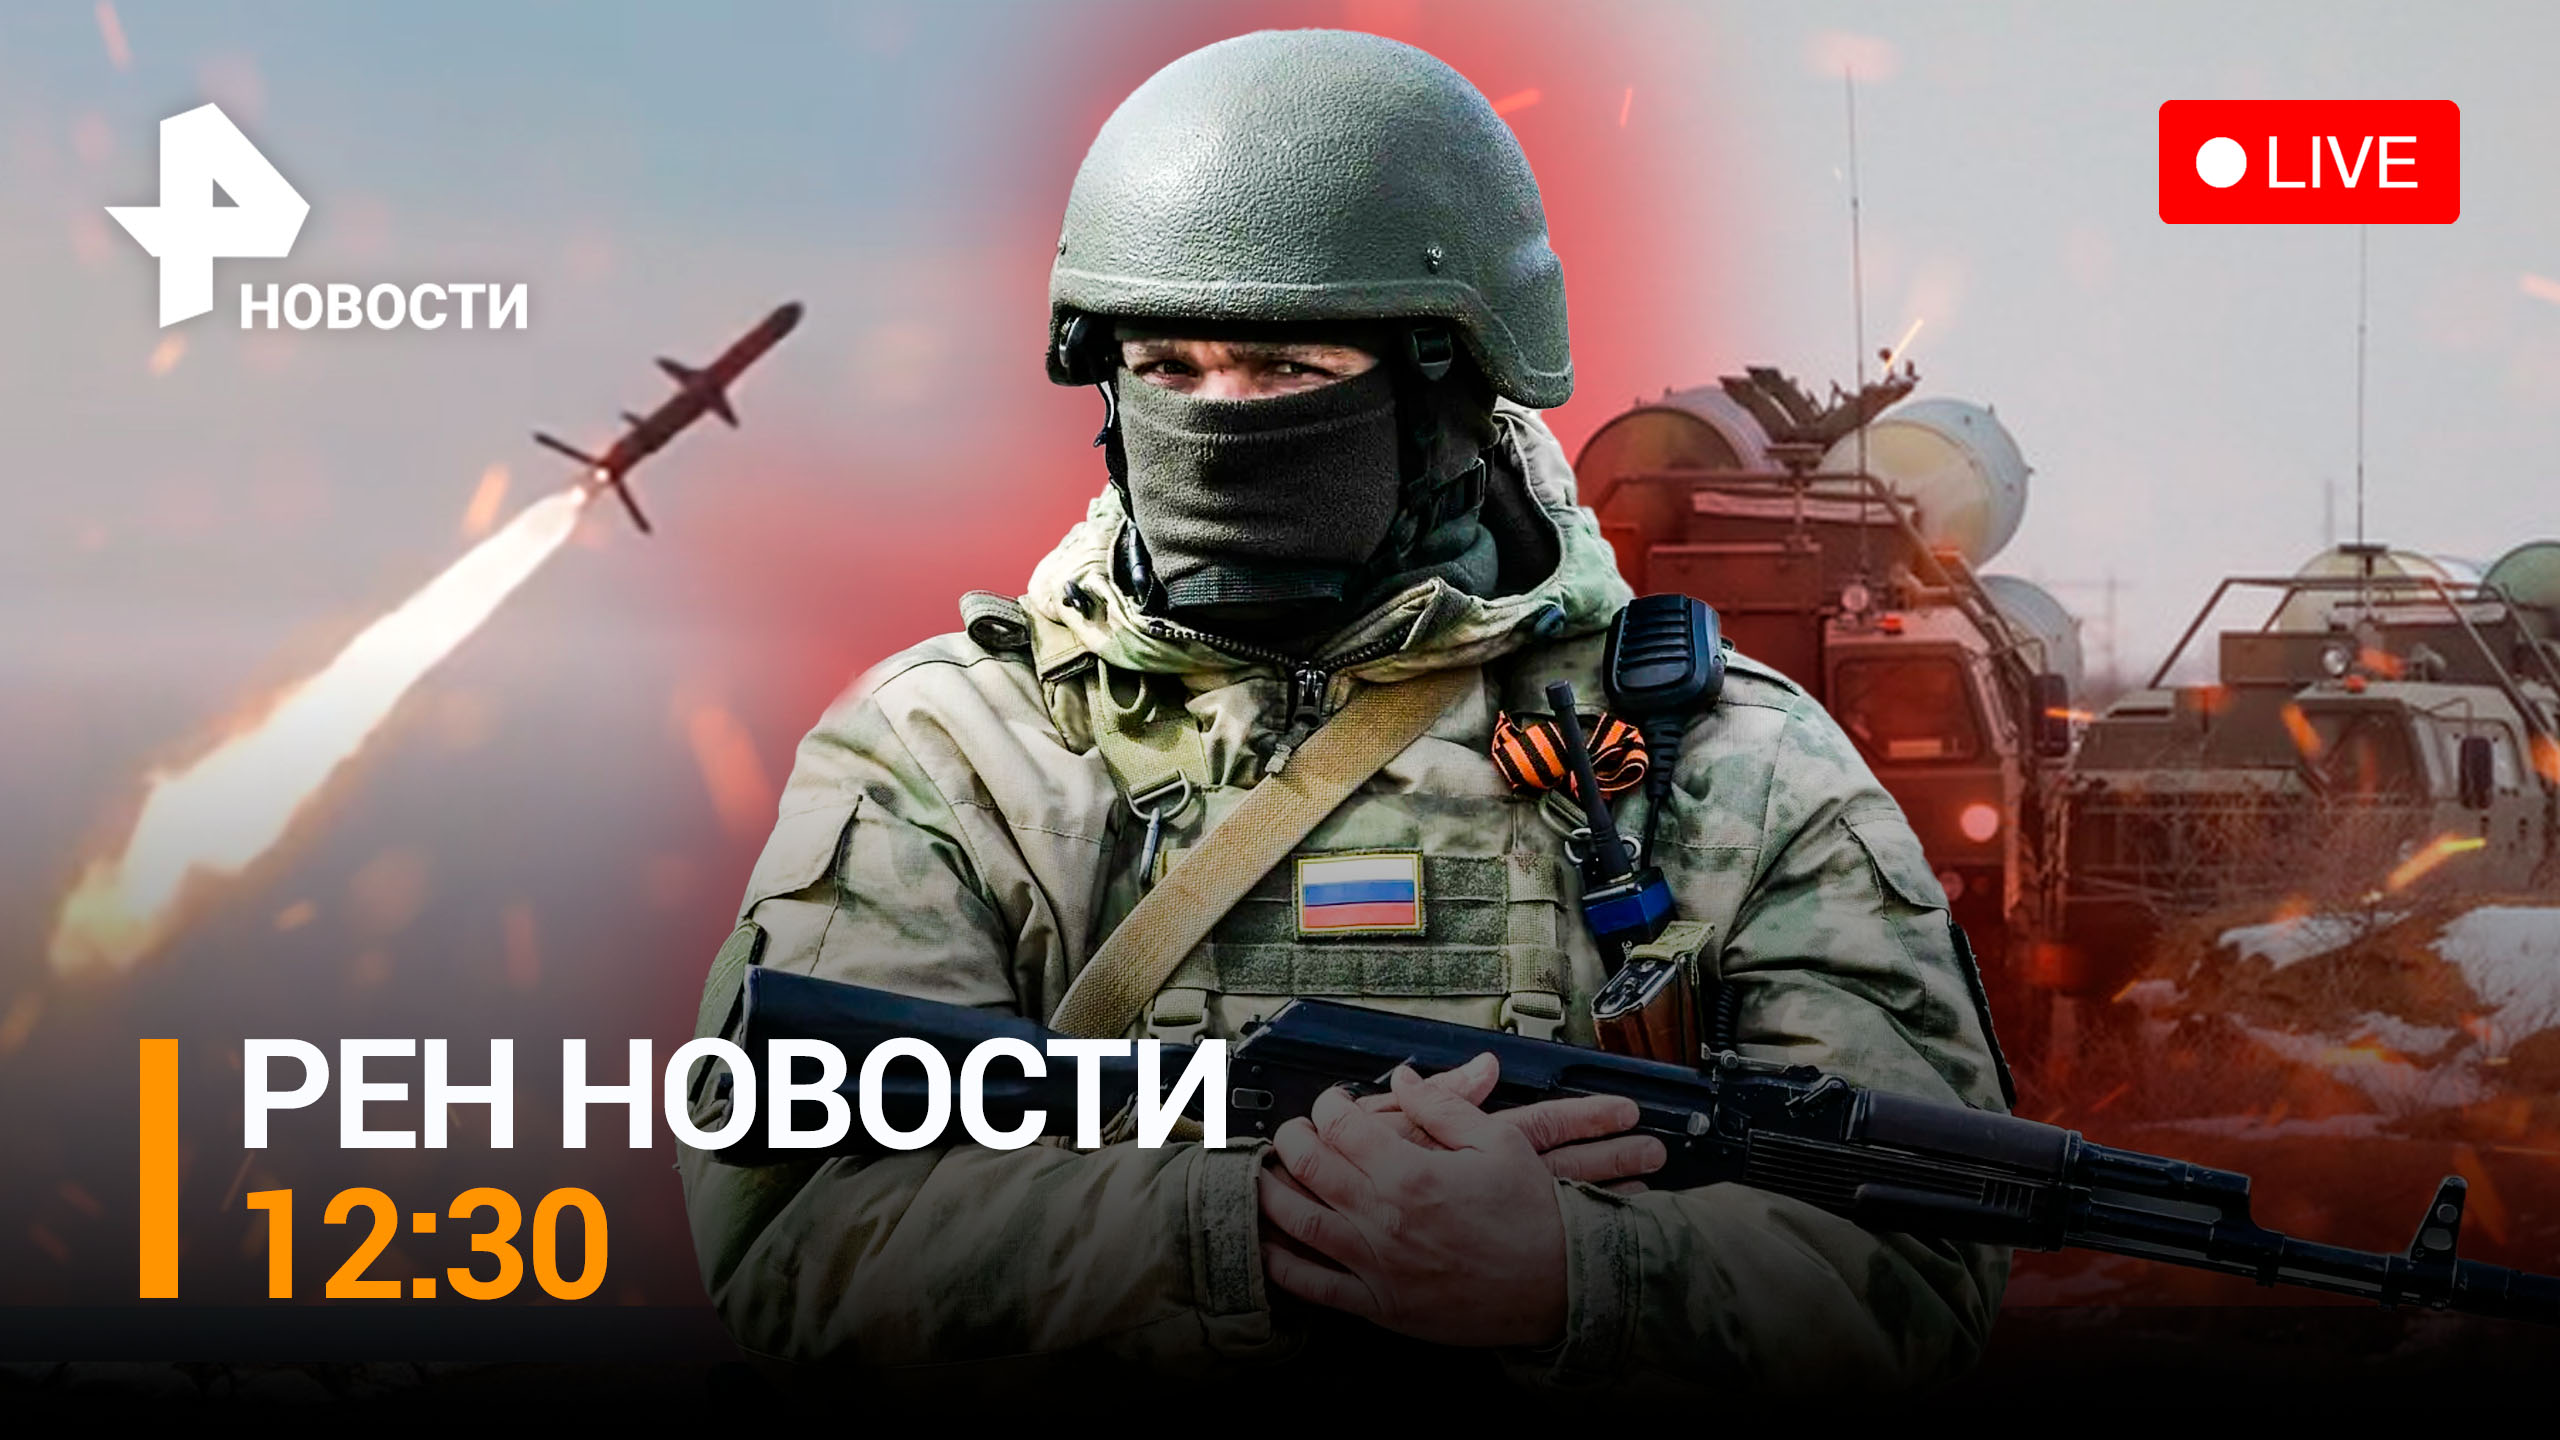 Новая атака ВСУ на Донецк. Новейшие дроны "Орлан" отражают удары / РЕН ТВ НОВОСТИ 12:30 от 29.12.22